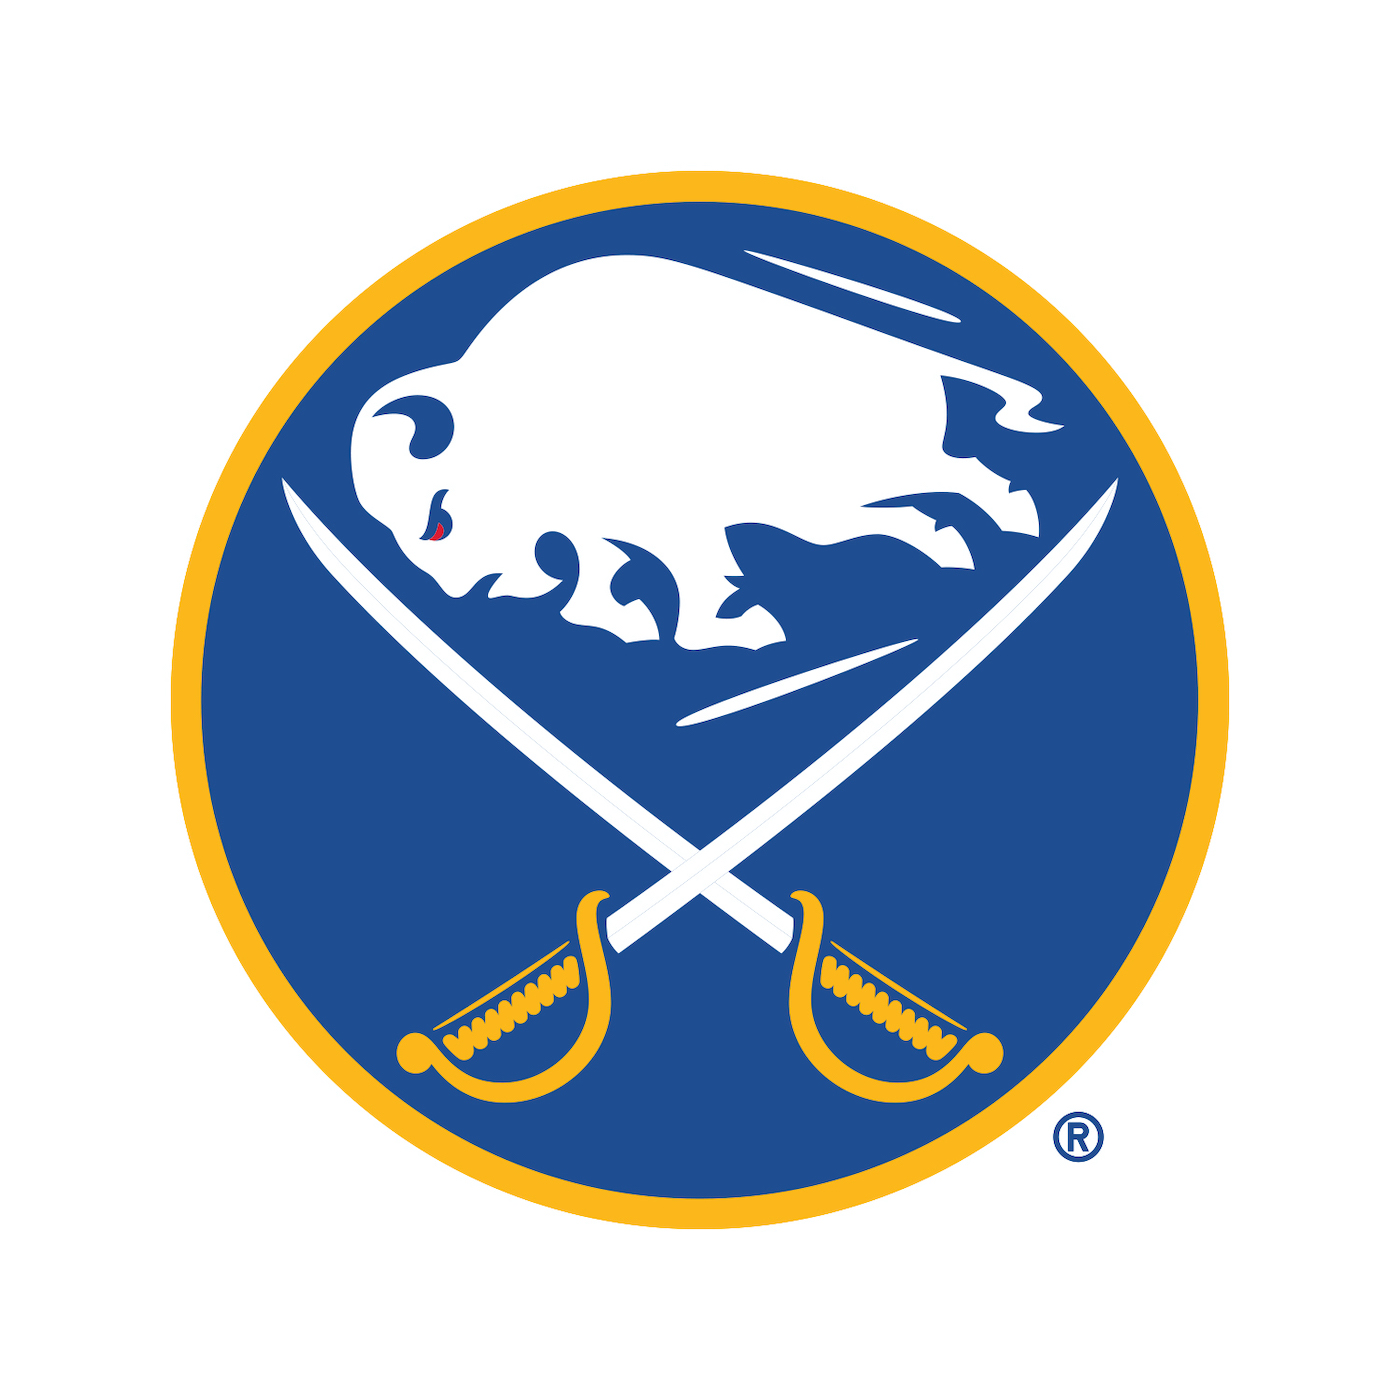 Buffalo Sabres logo courtesy and copyright Buffalo Sabres Public Relations